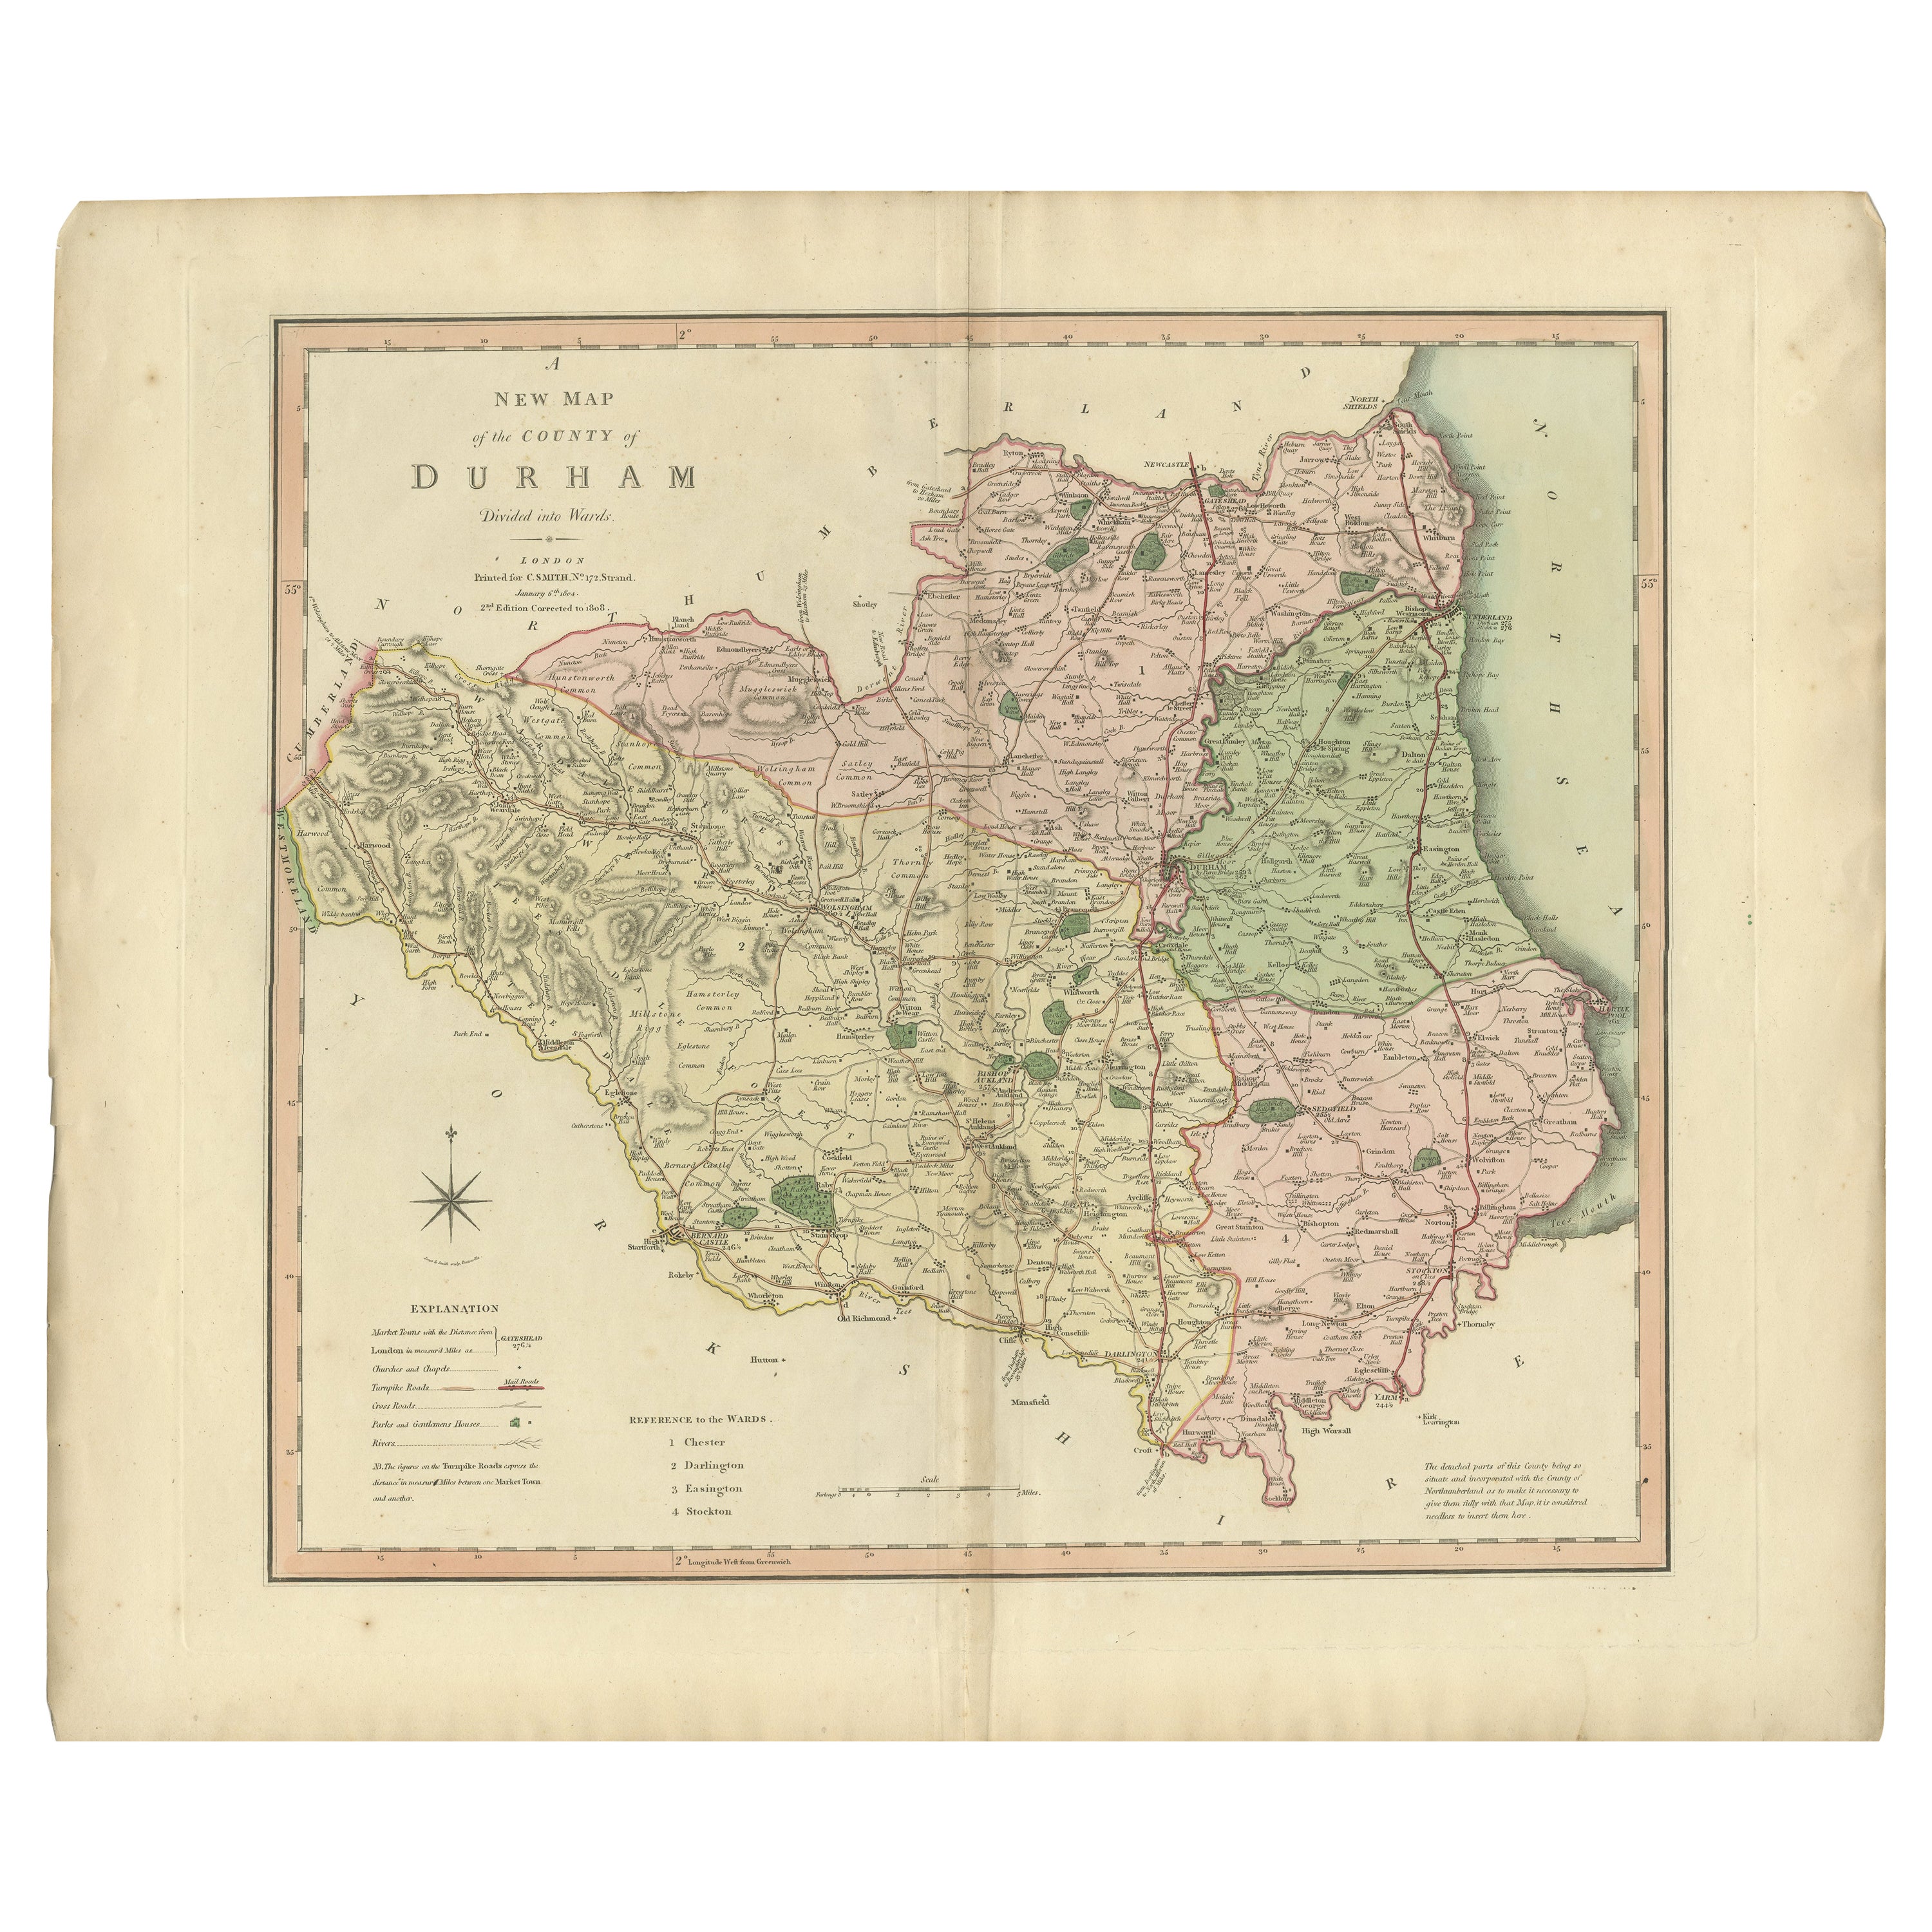 Original Hand-Colored Antique County Map of Durham, England, 1804